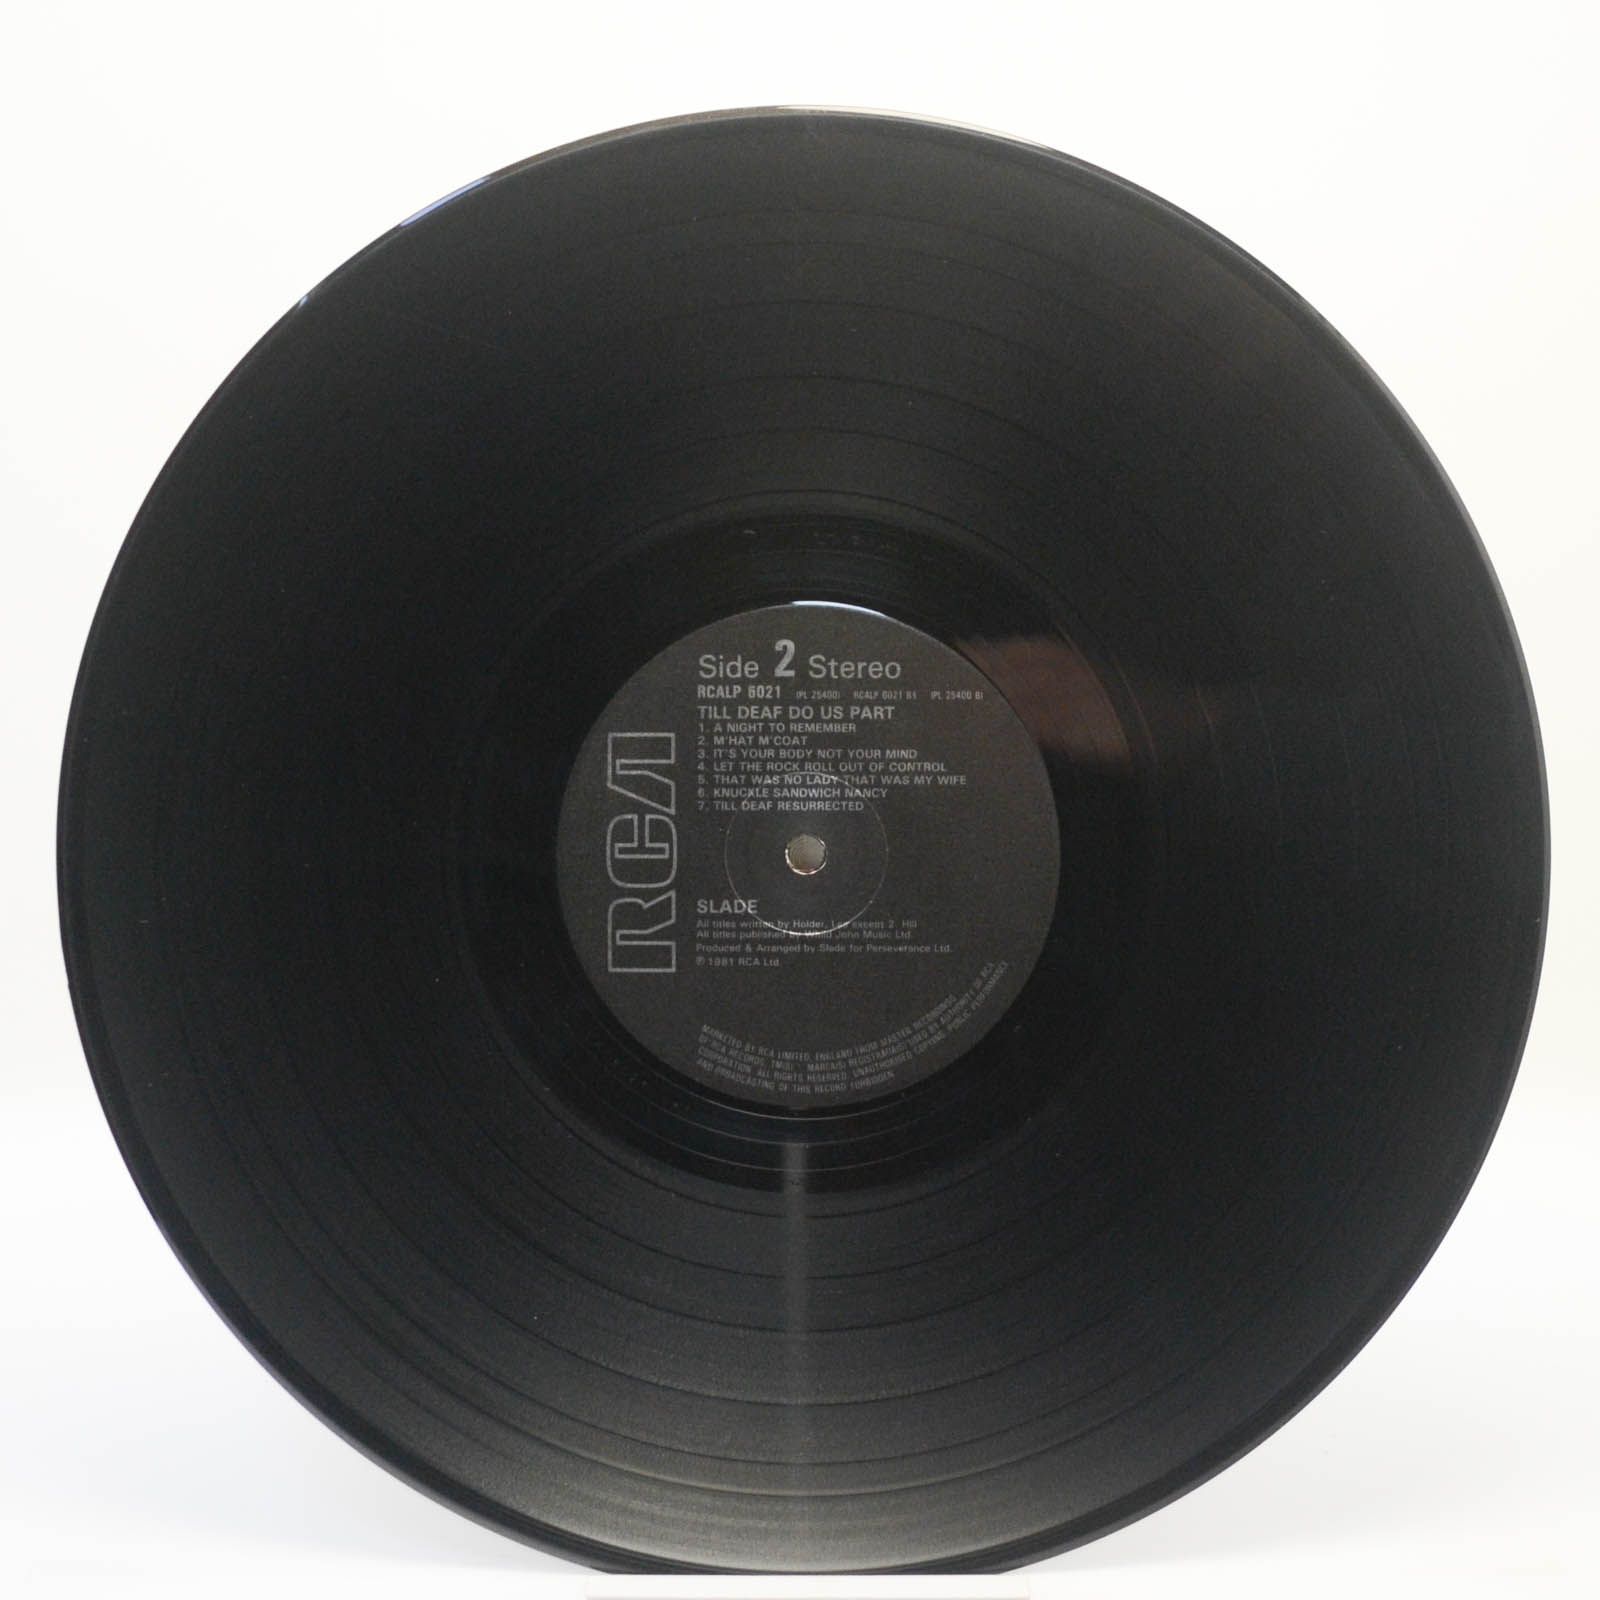 Slade — Till Deaf Do Us Part (1-st, UK), 1981